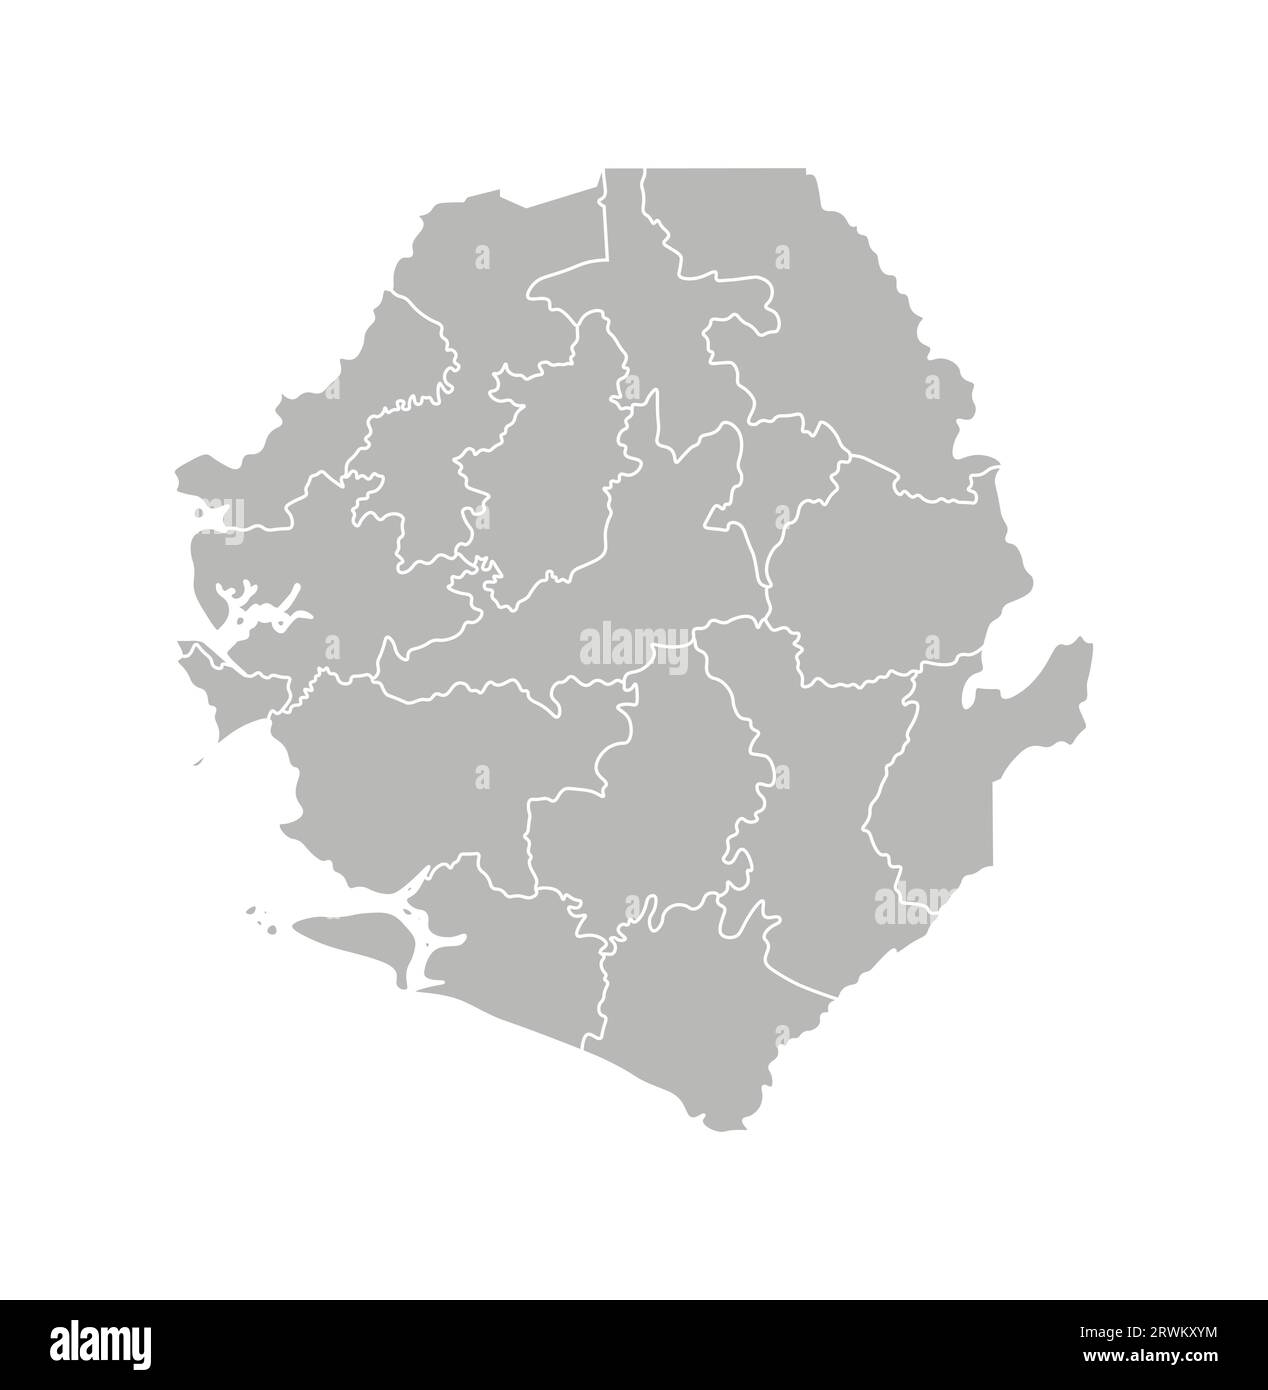 Illustrazione vettoriale isolata della mappa amministrativa semplificata della Sierra Leone. Confini dei distretti (regioni). Silhouette grigie. Contorno bianco. Illustrazione Vettoriale